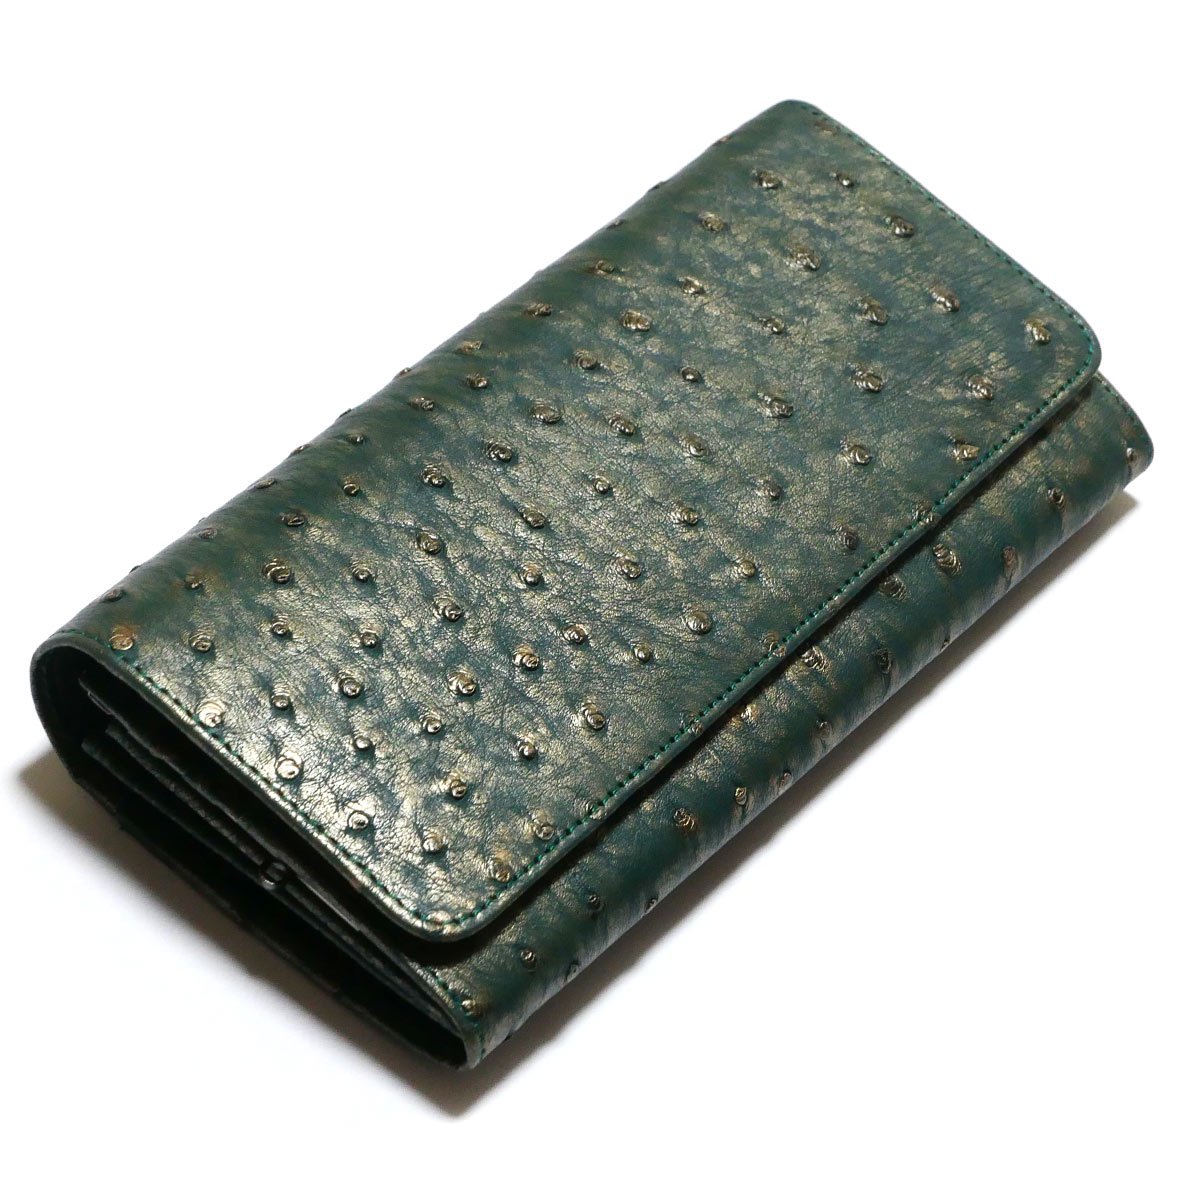 がま口 長財布 かぶせ型 がま口財布 ガマ口 財布 本革 駝鳥革